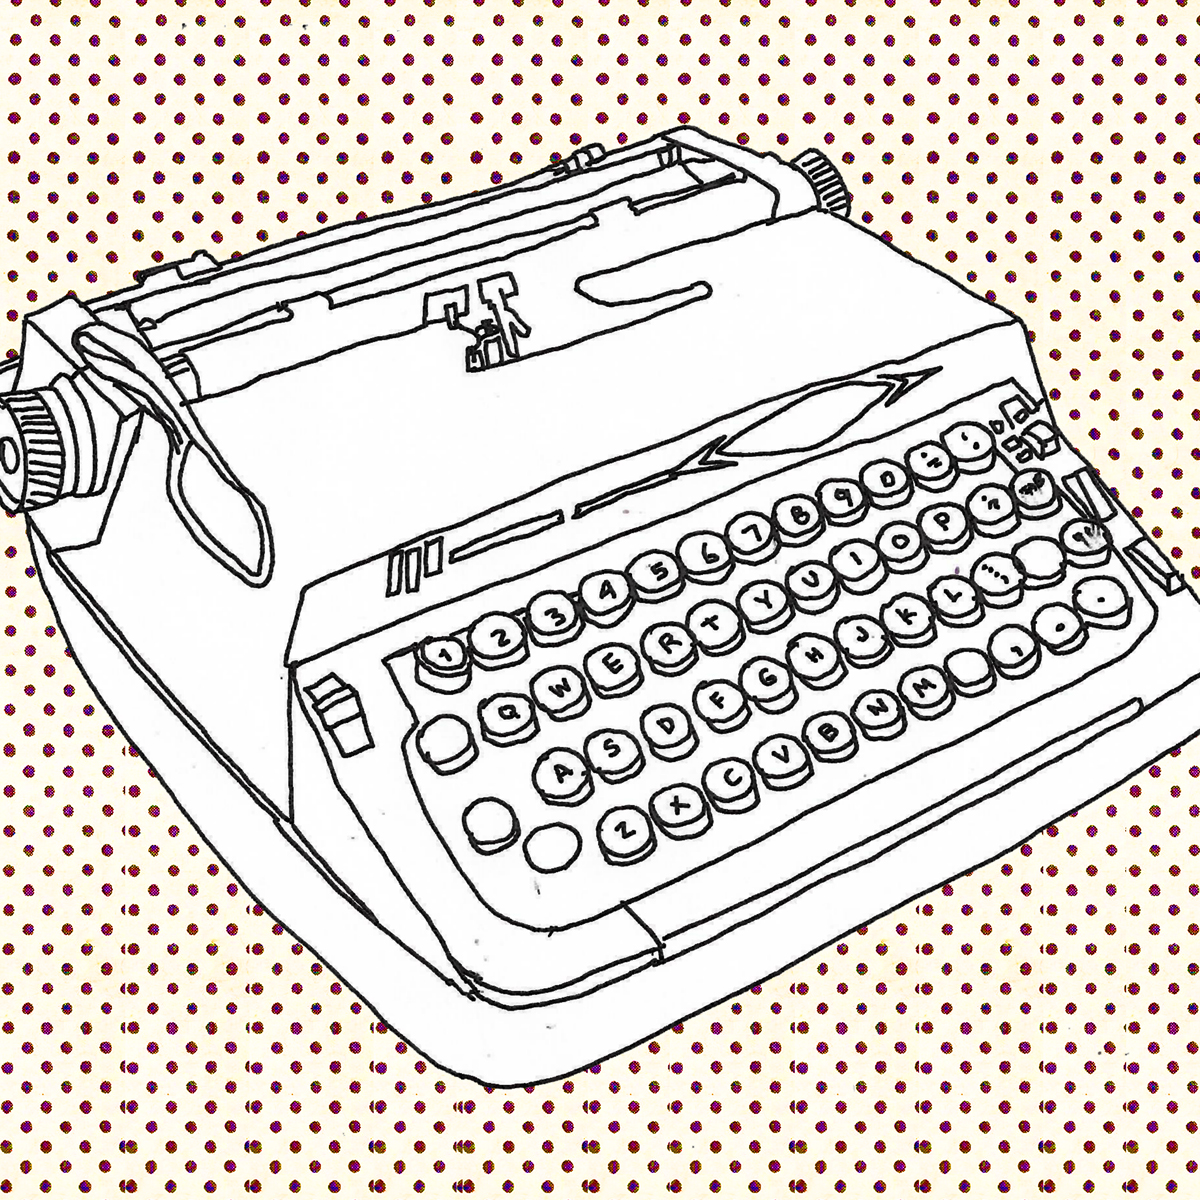 typewriter 02.jpg